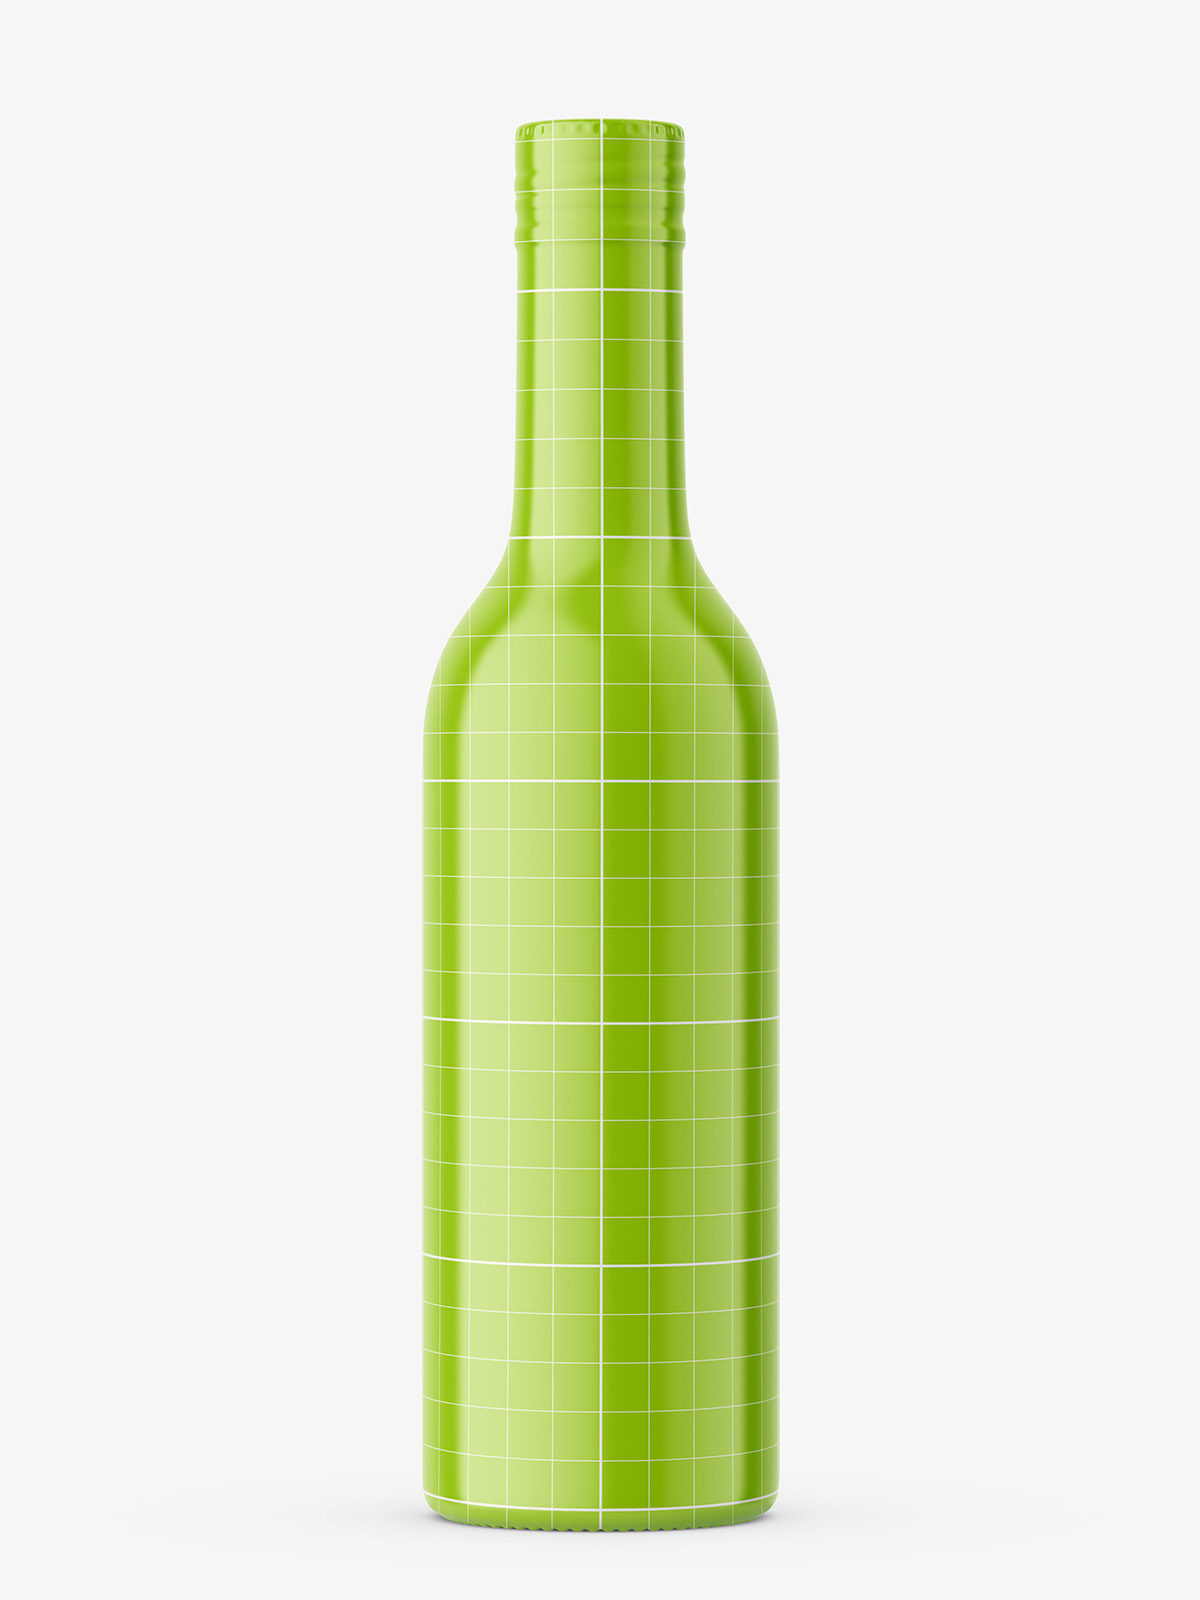 Download Liquor bottle mockup with shrink sleeve label - Smarty Mockups